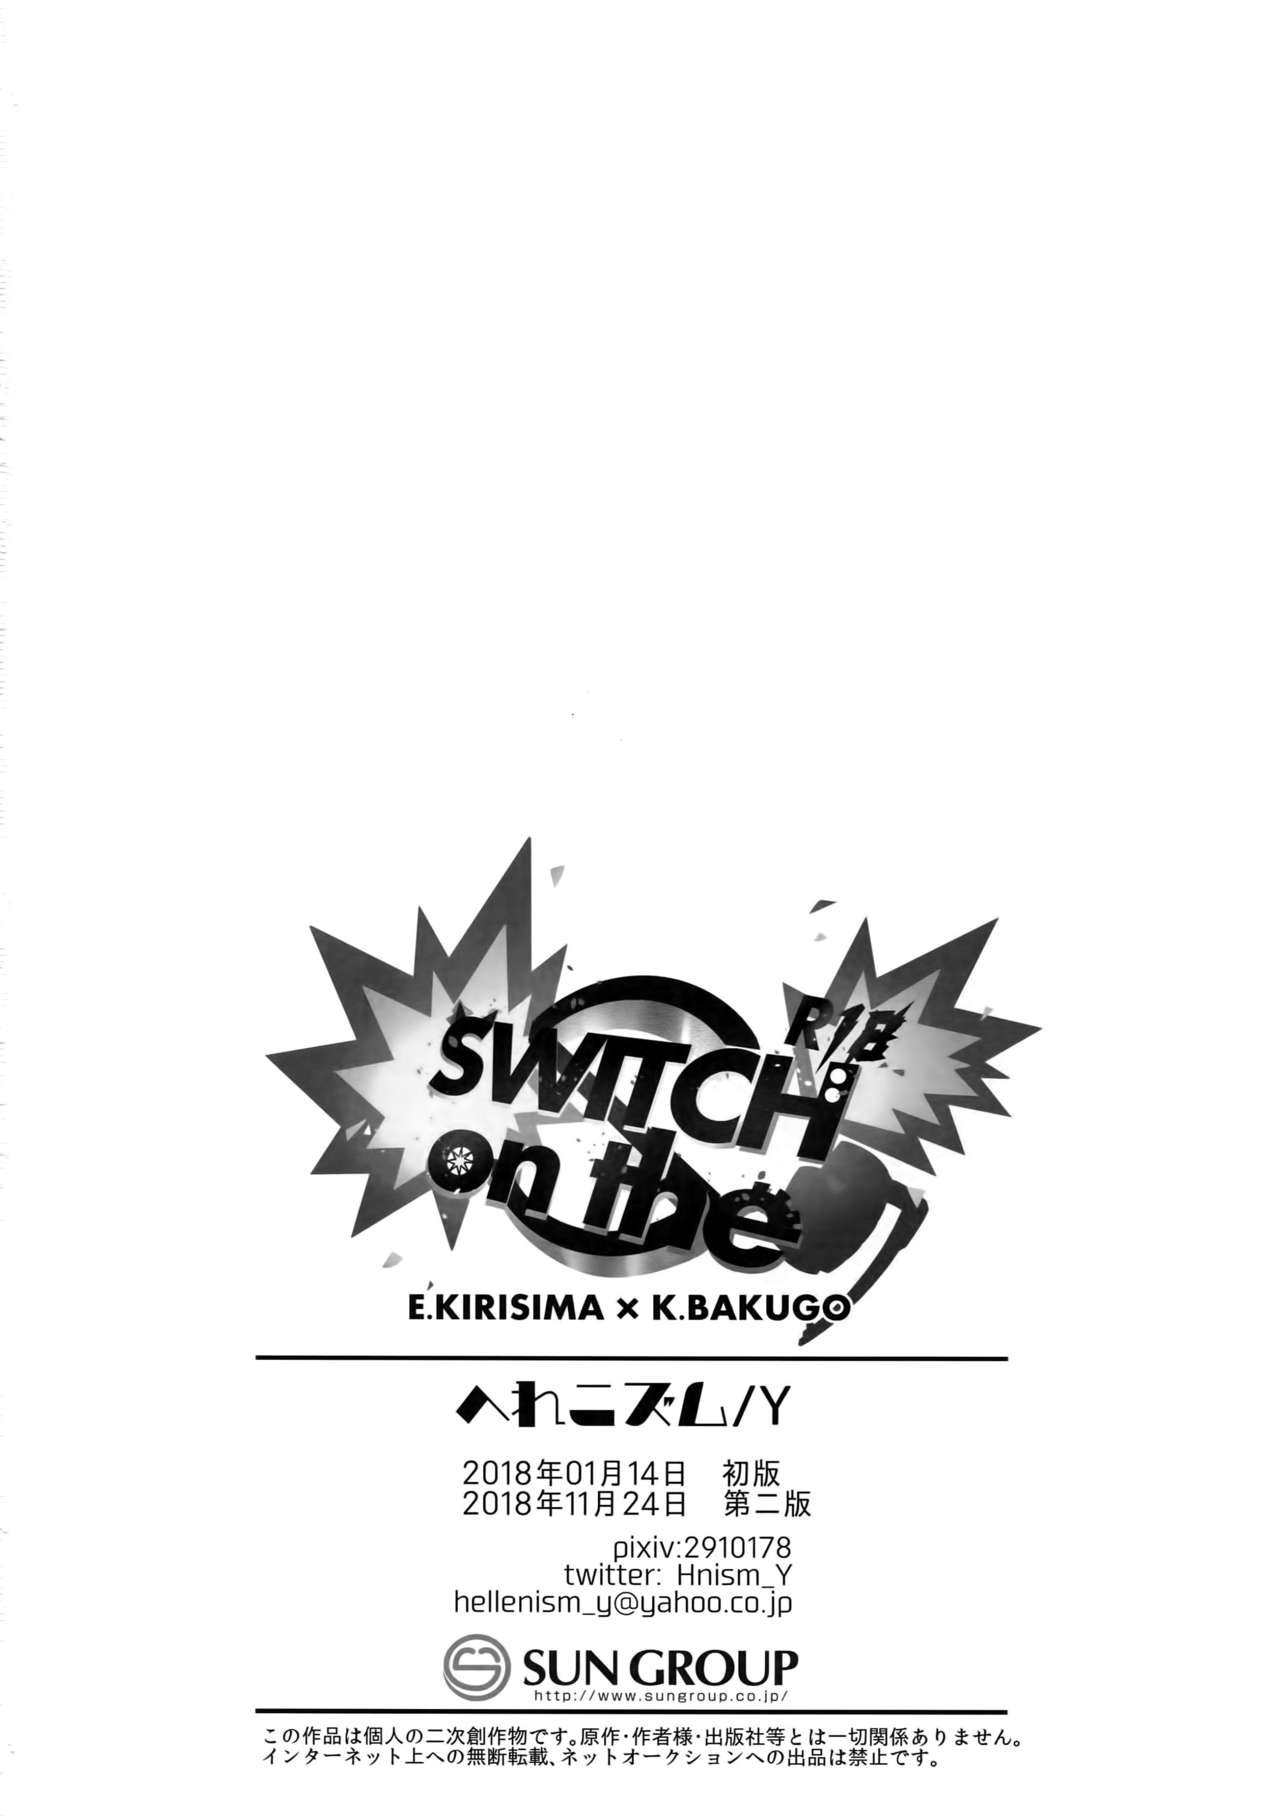 (どうやら出番のようだ!14) [へれニズム (Y)] SWITCH on the S (僕のヒーローアカデミア)